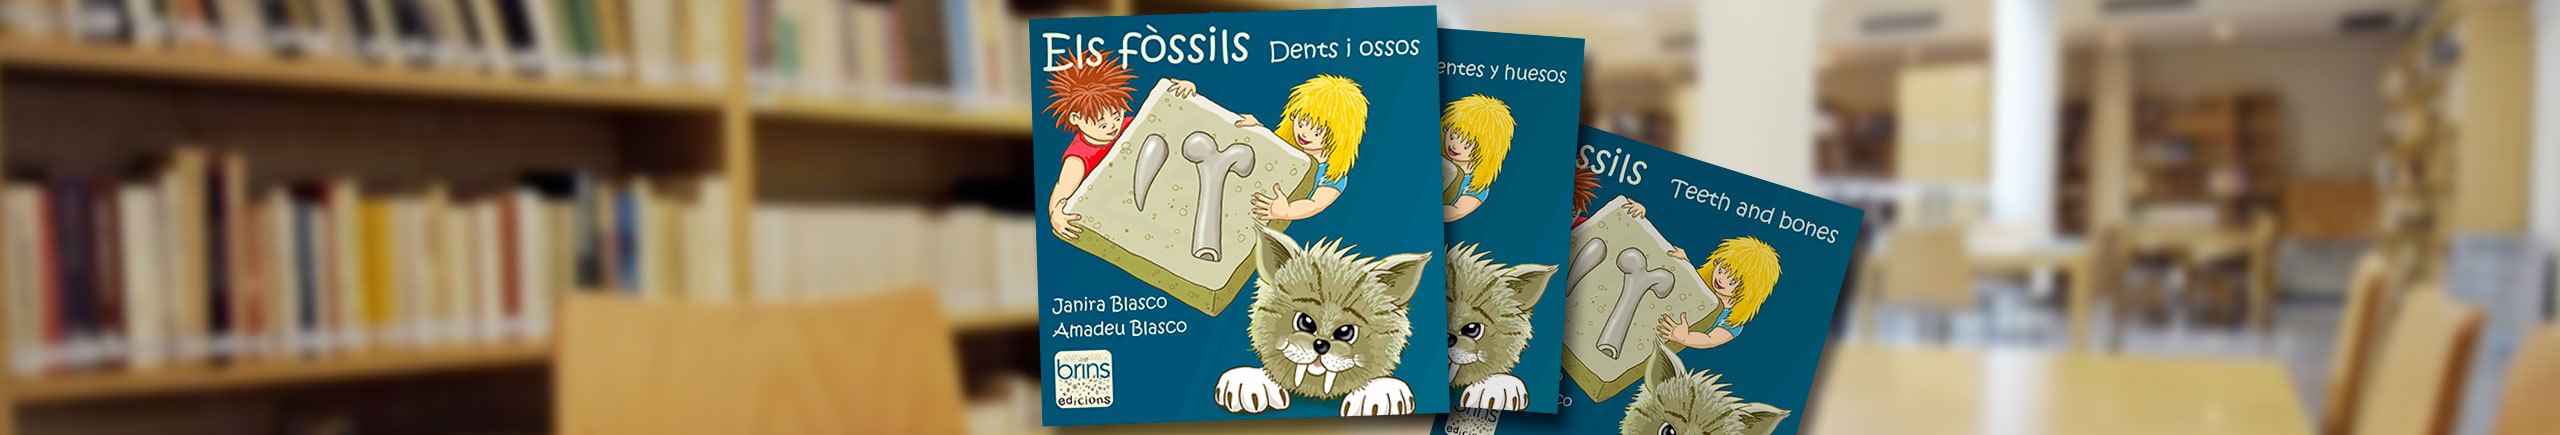 els-fossils2